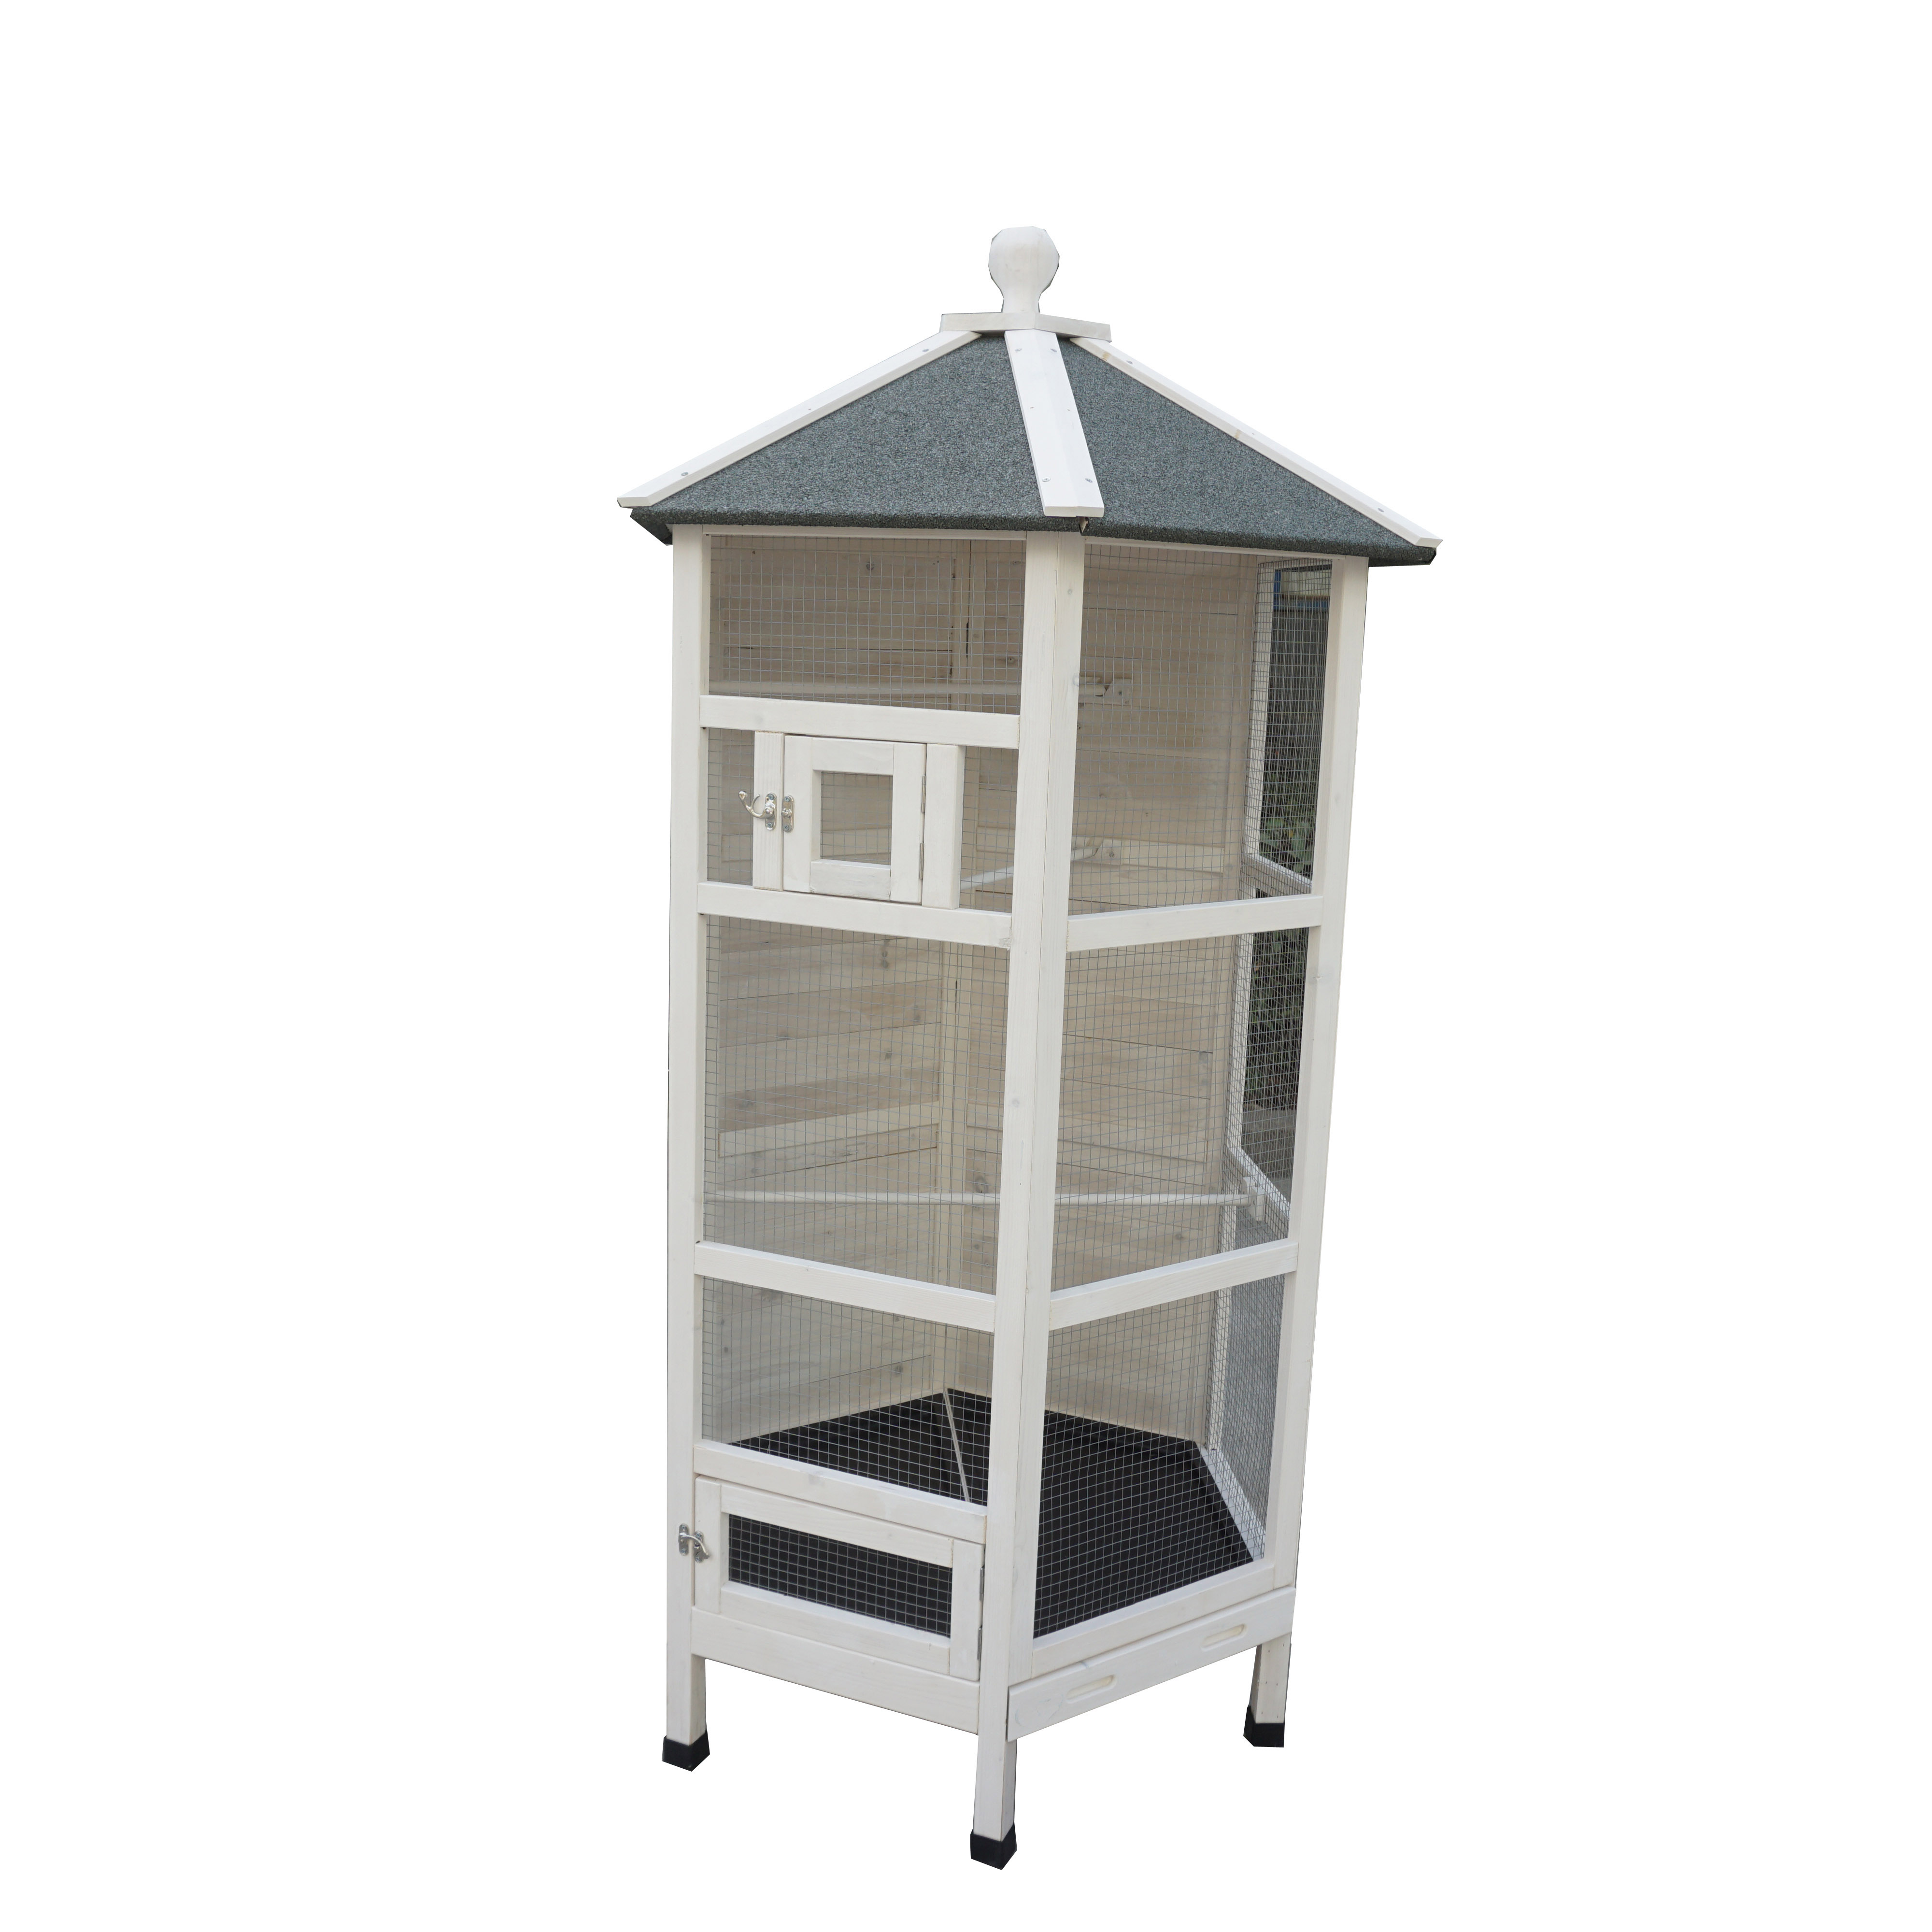 Pajarera hexagonal para exteriores, jaula de cría de palomas de madera galvanizada para la venta con techo cubierto